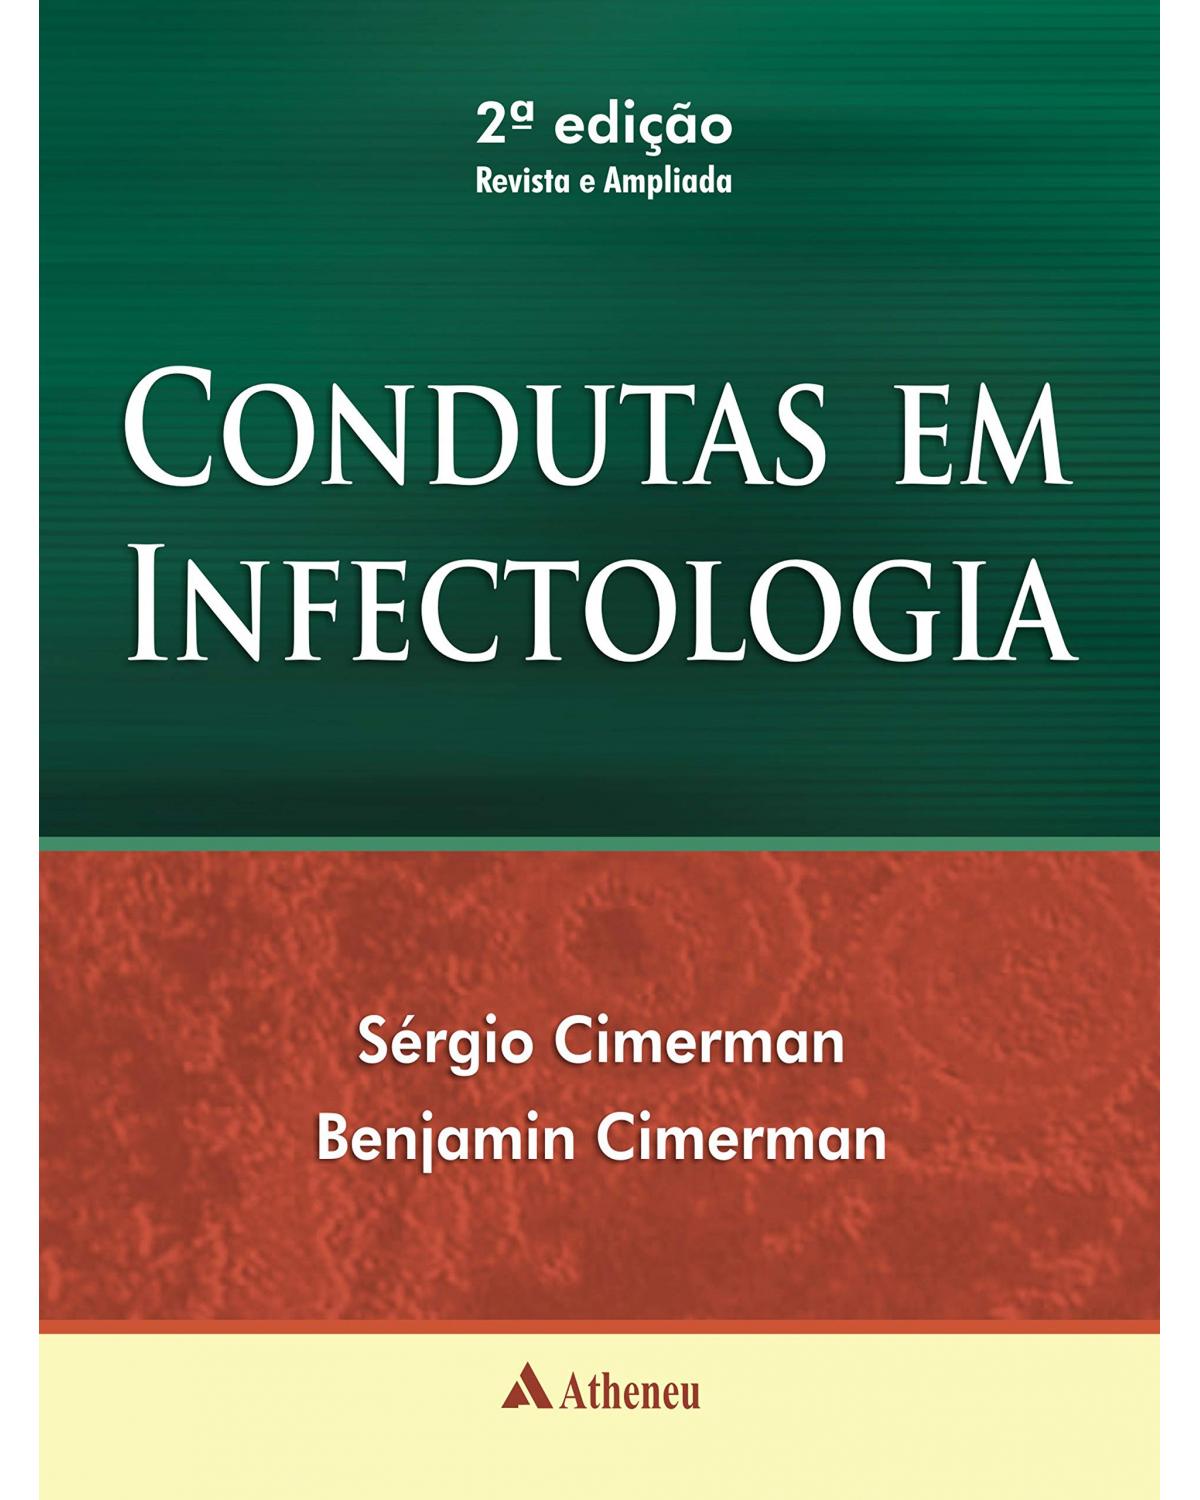 Condutas em infectologia